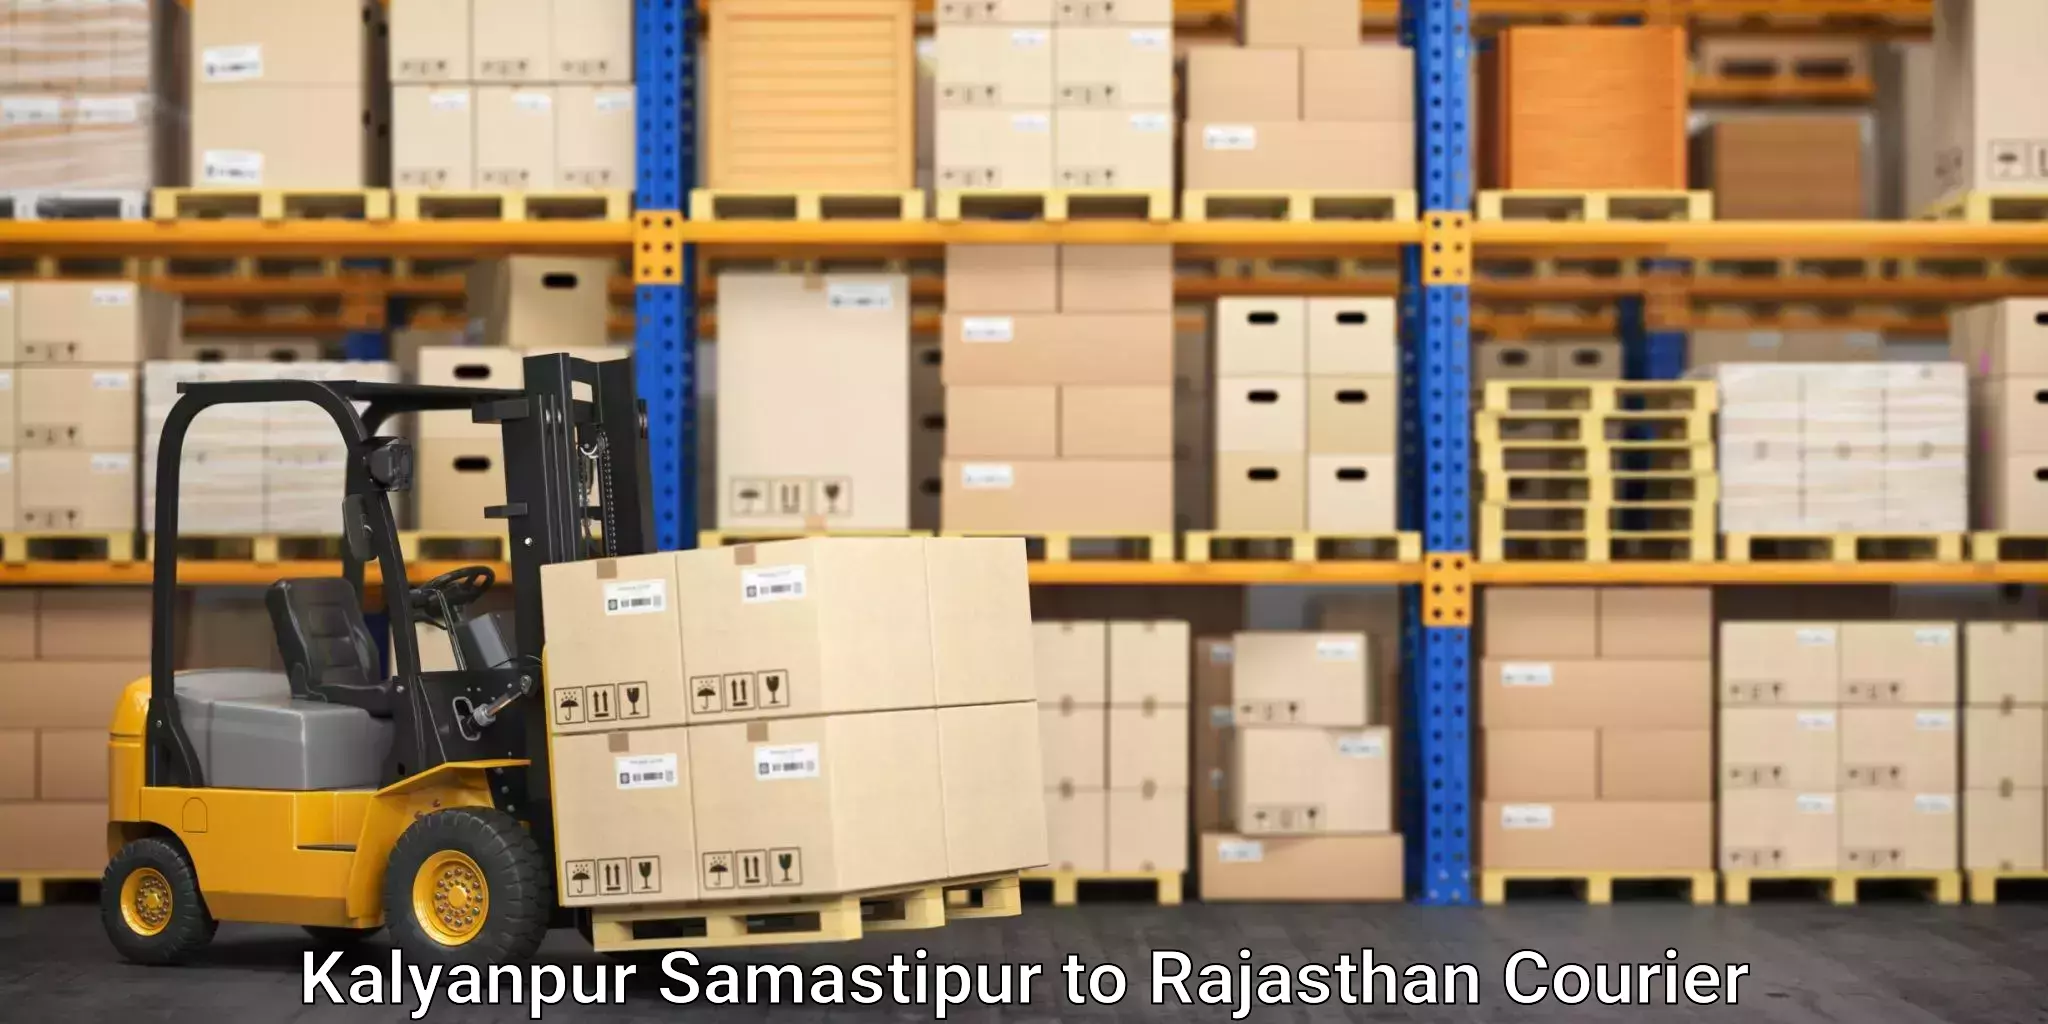 Furniture transport experts Kalyanpur Samastipur to Nagar